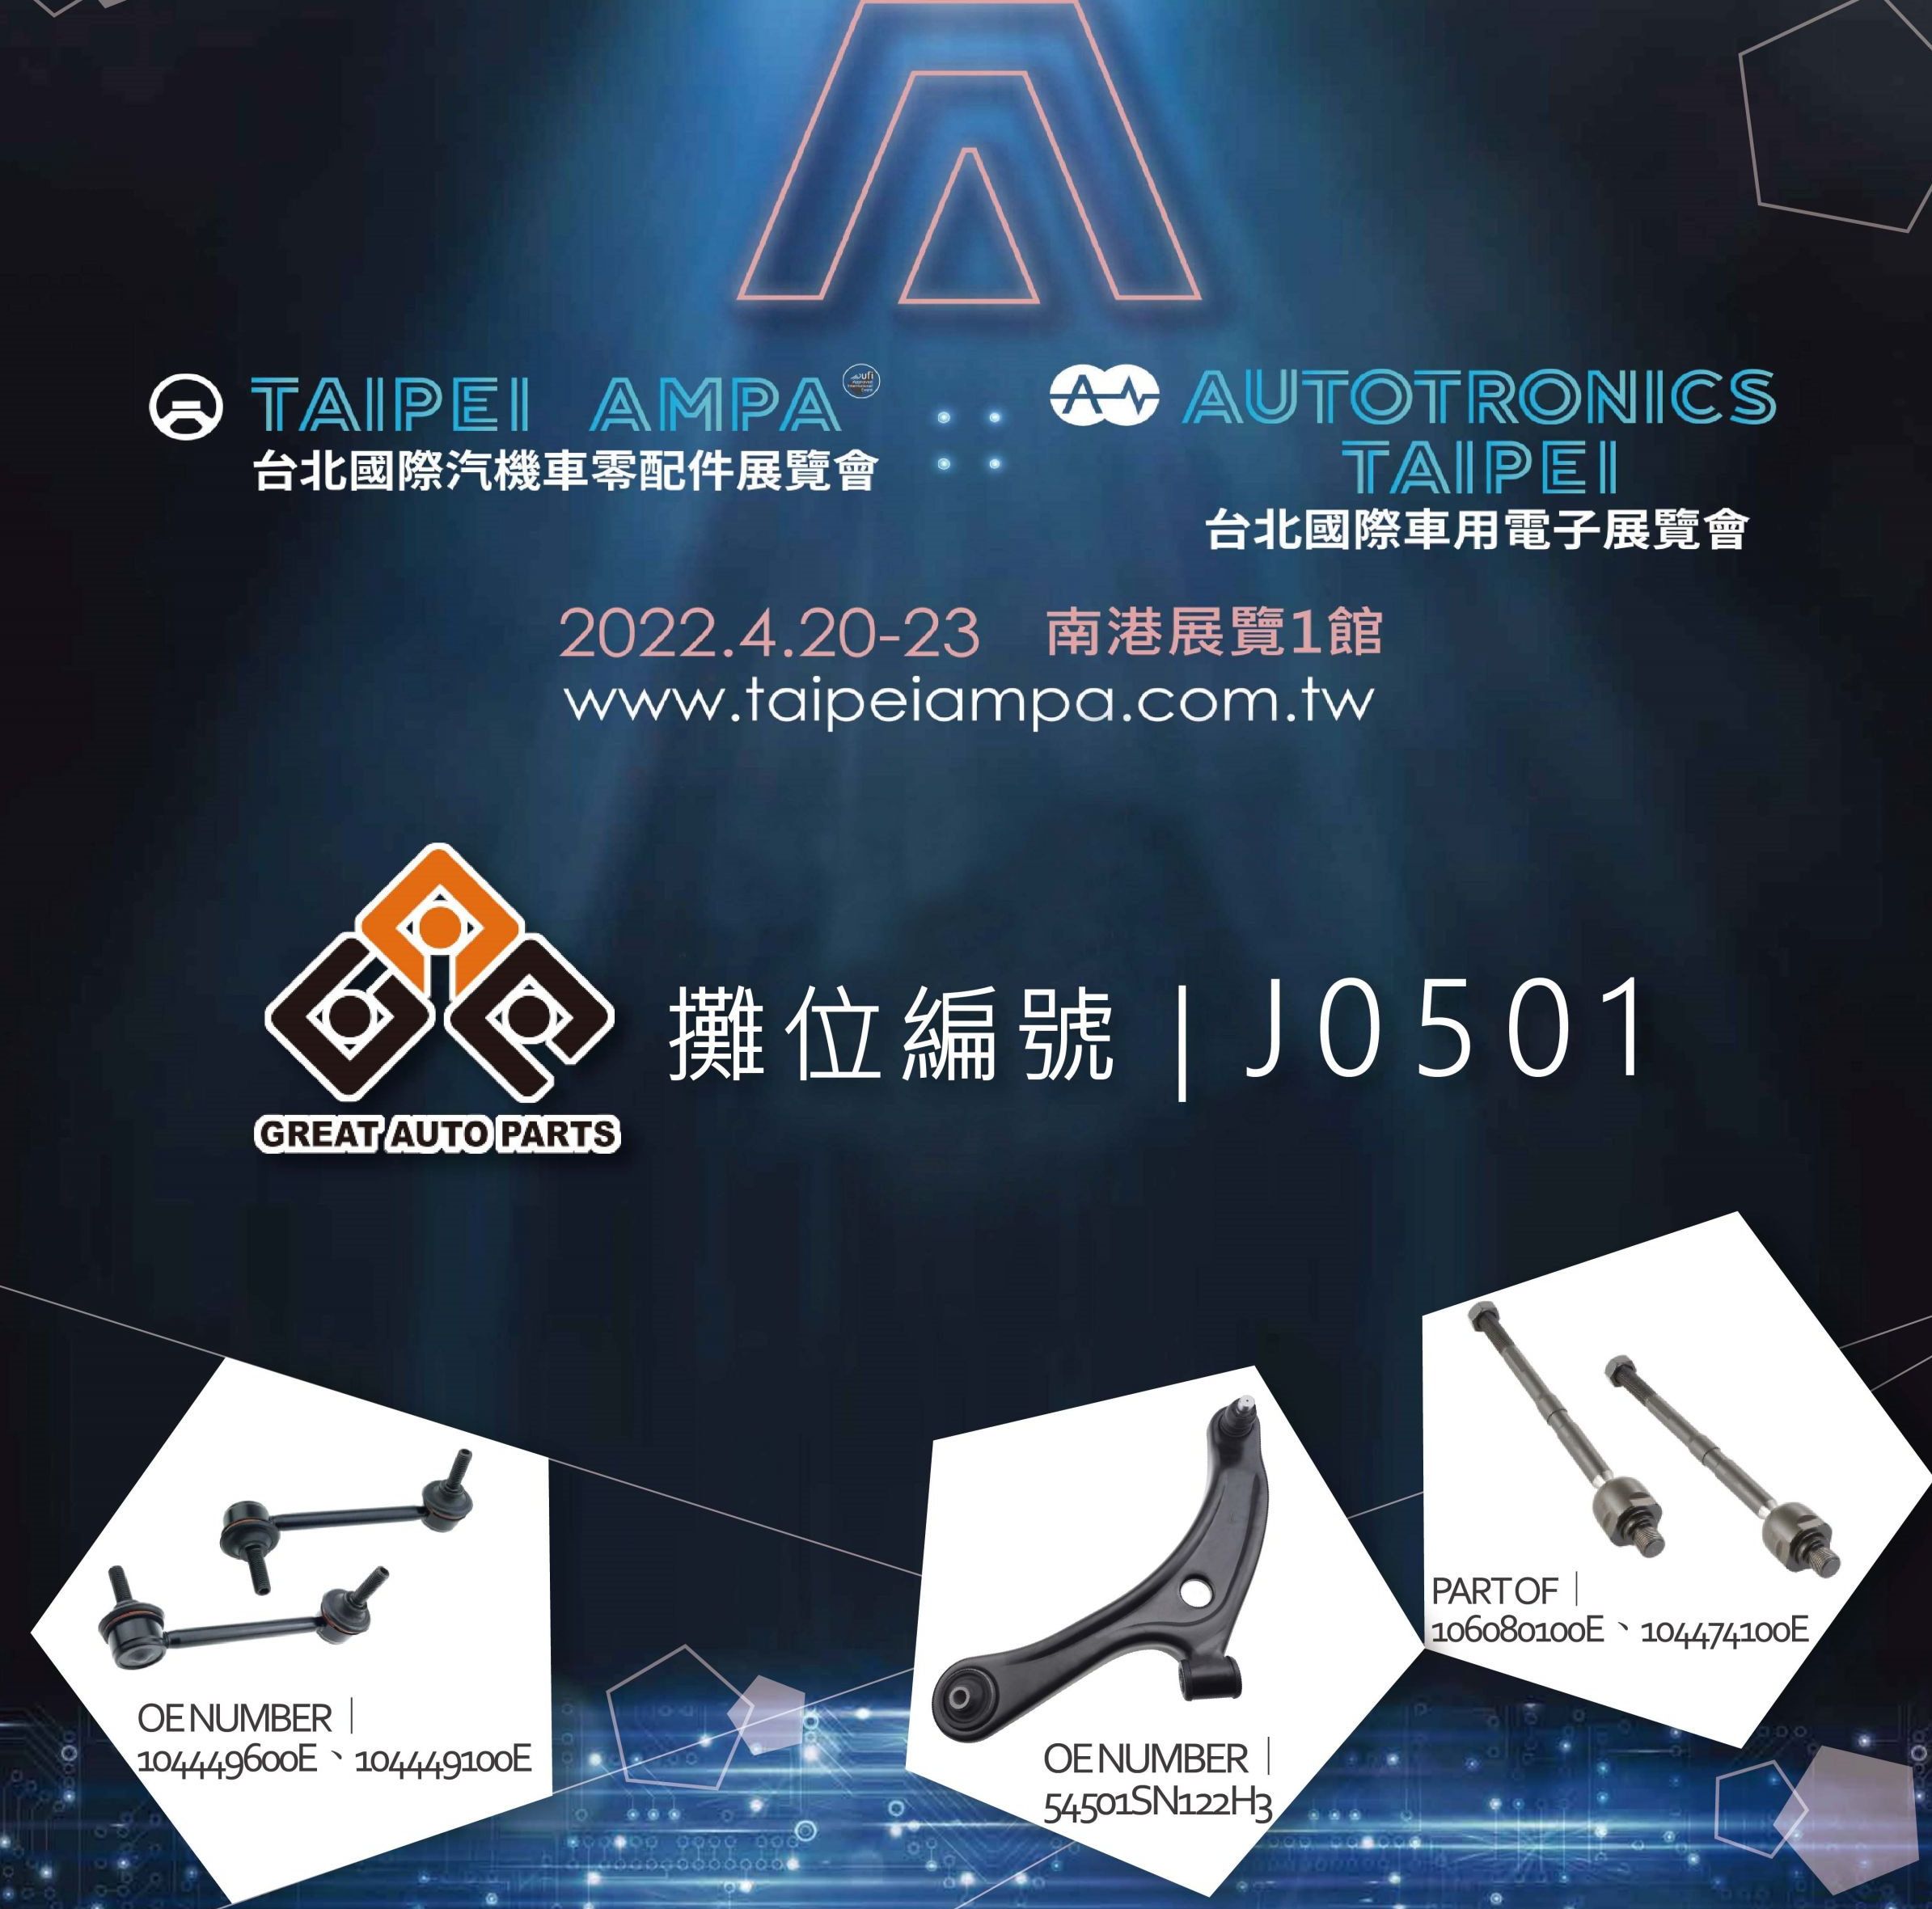 Taipei AMPA 2022 (Grandes Piezas de Automóvil)